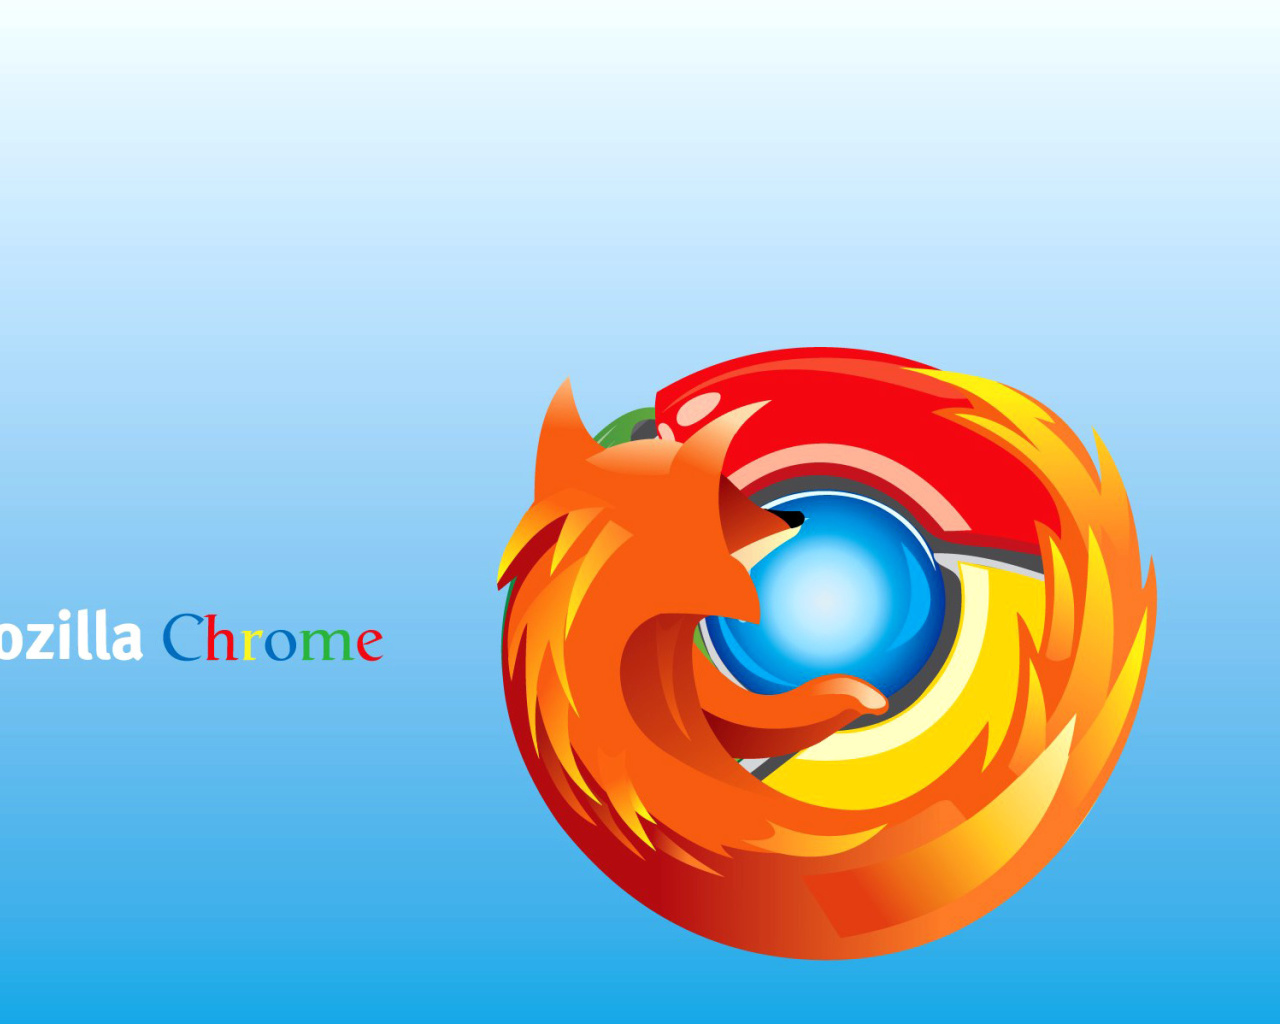 Mozilla Chrome wallpaper 1280x1024